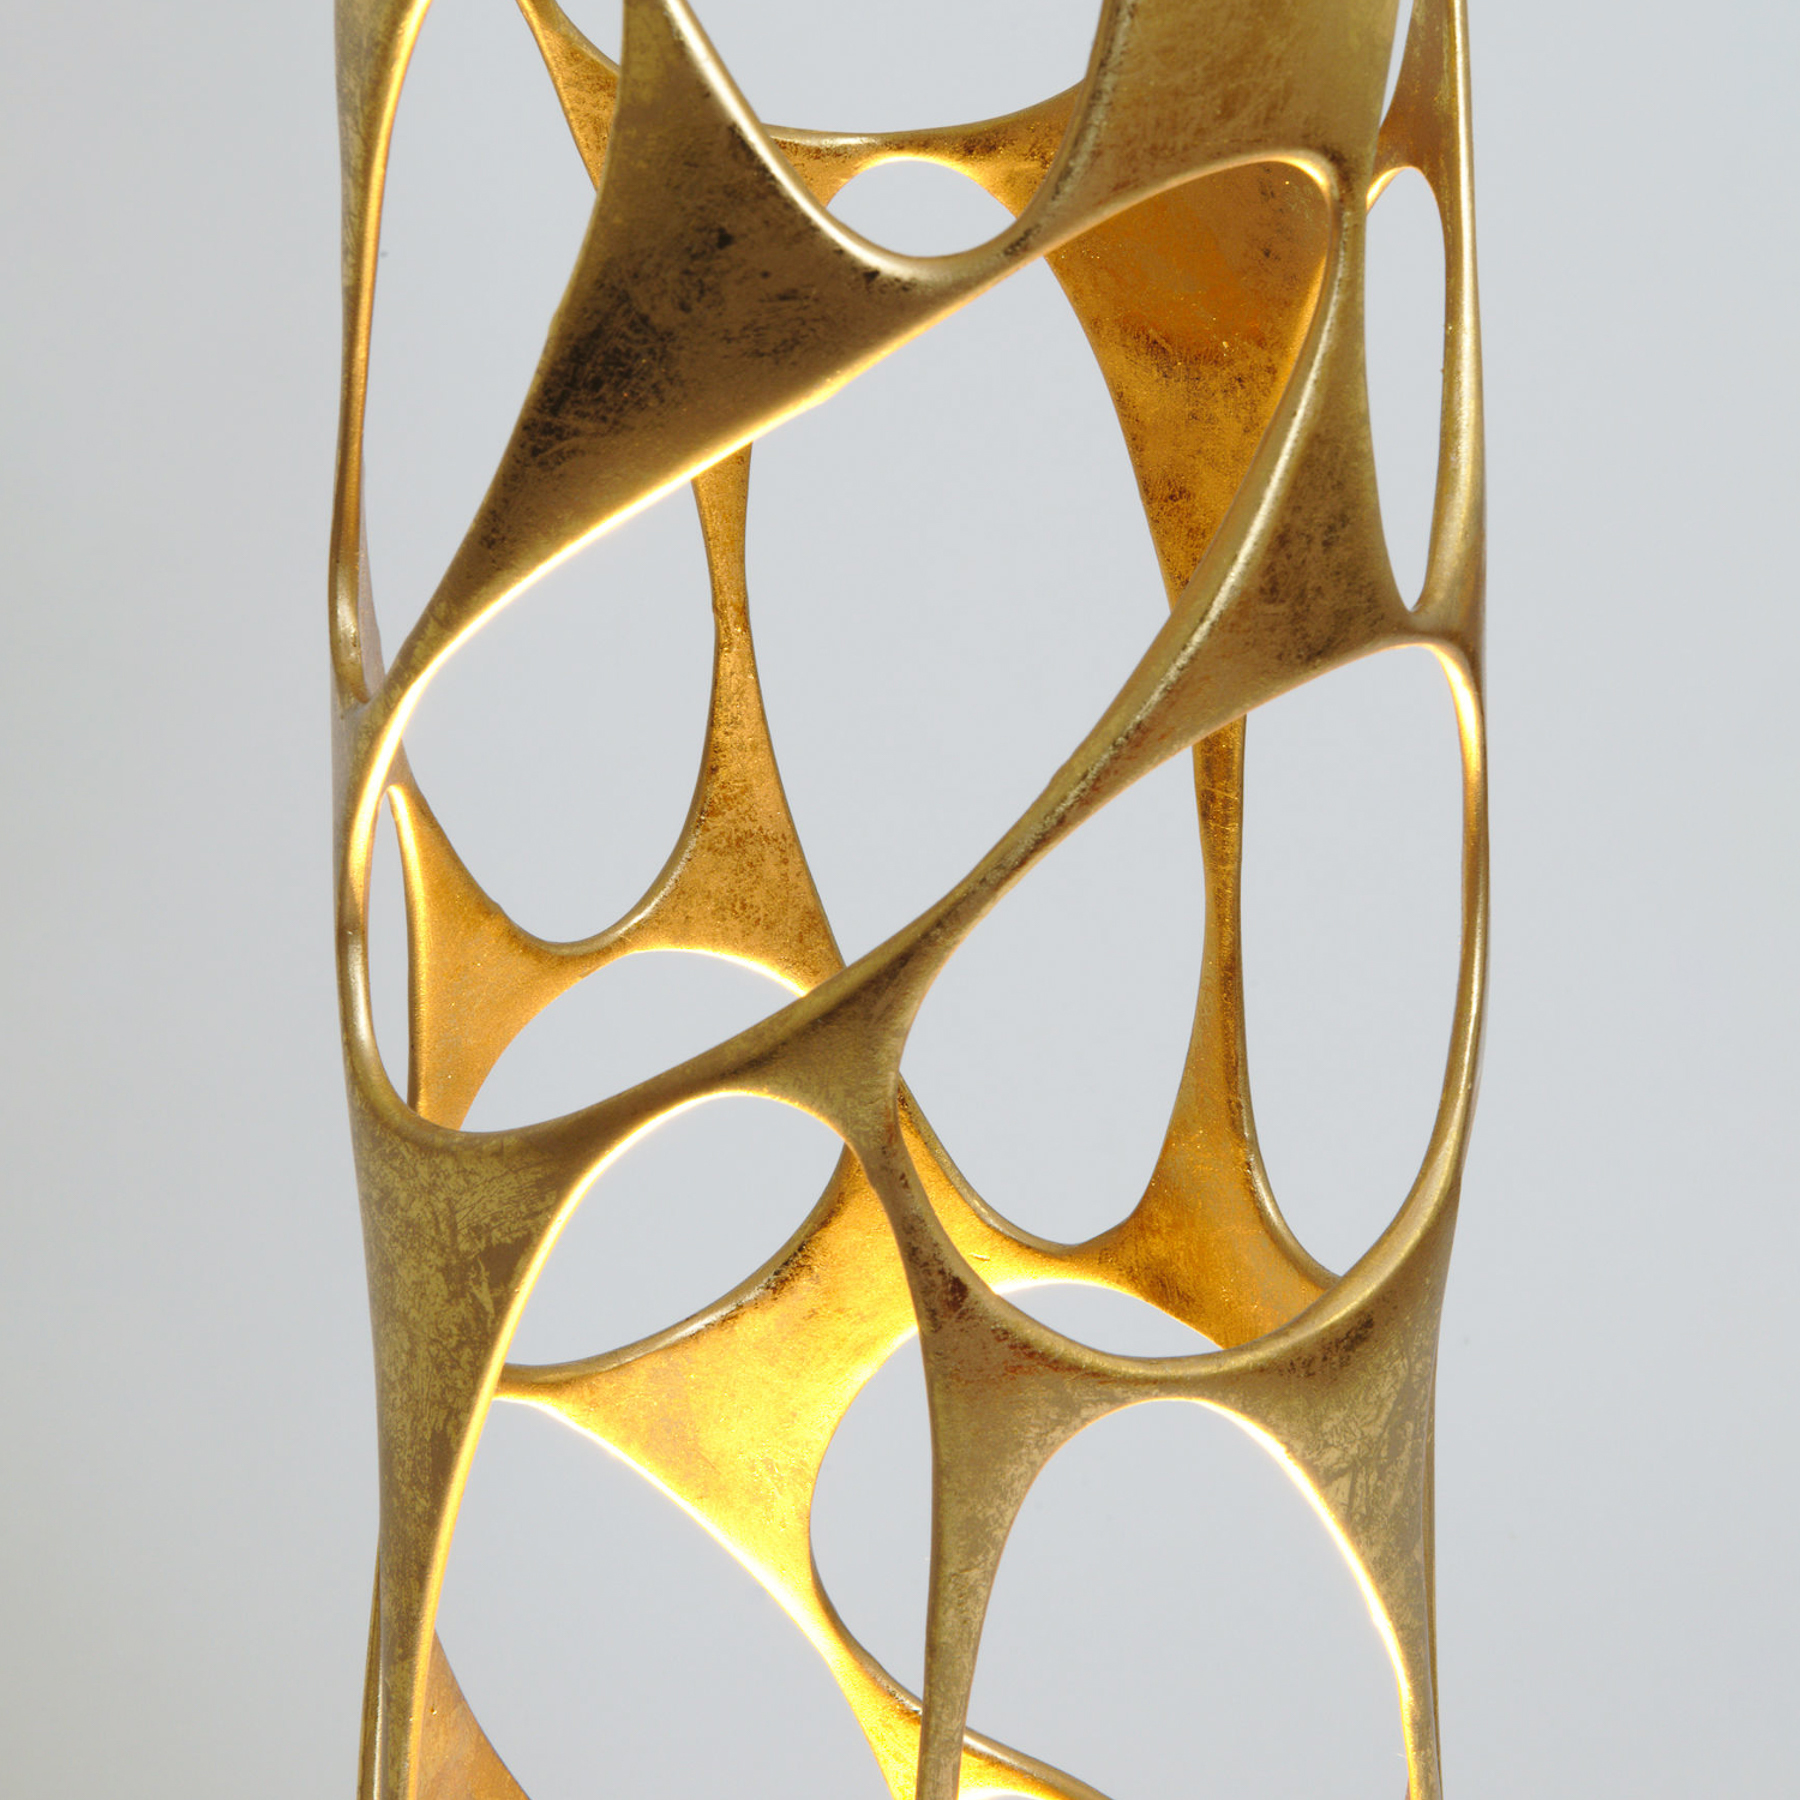 Lampe sur pied Talismano, doré, hauteur 176 cm, fer